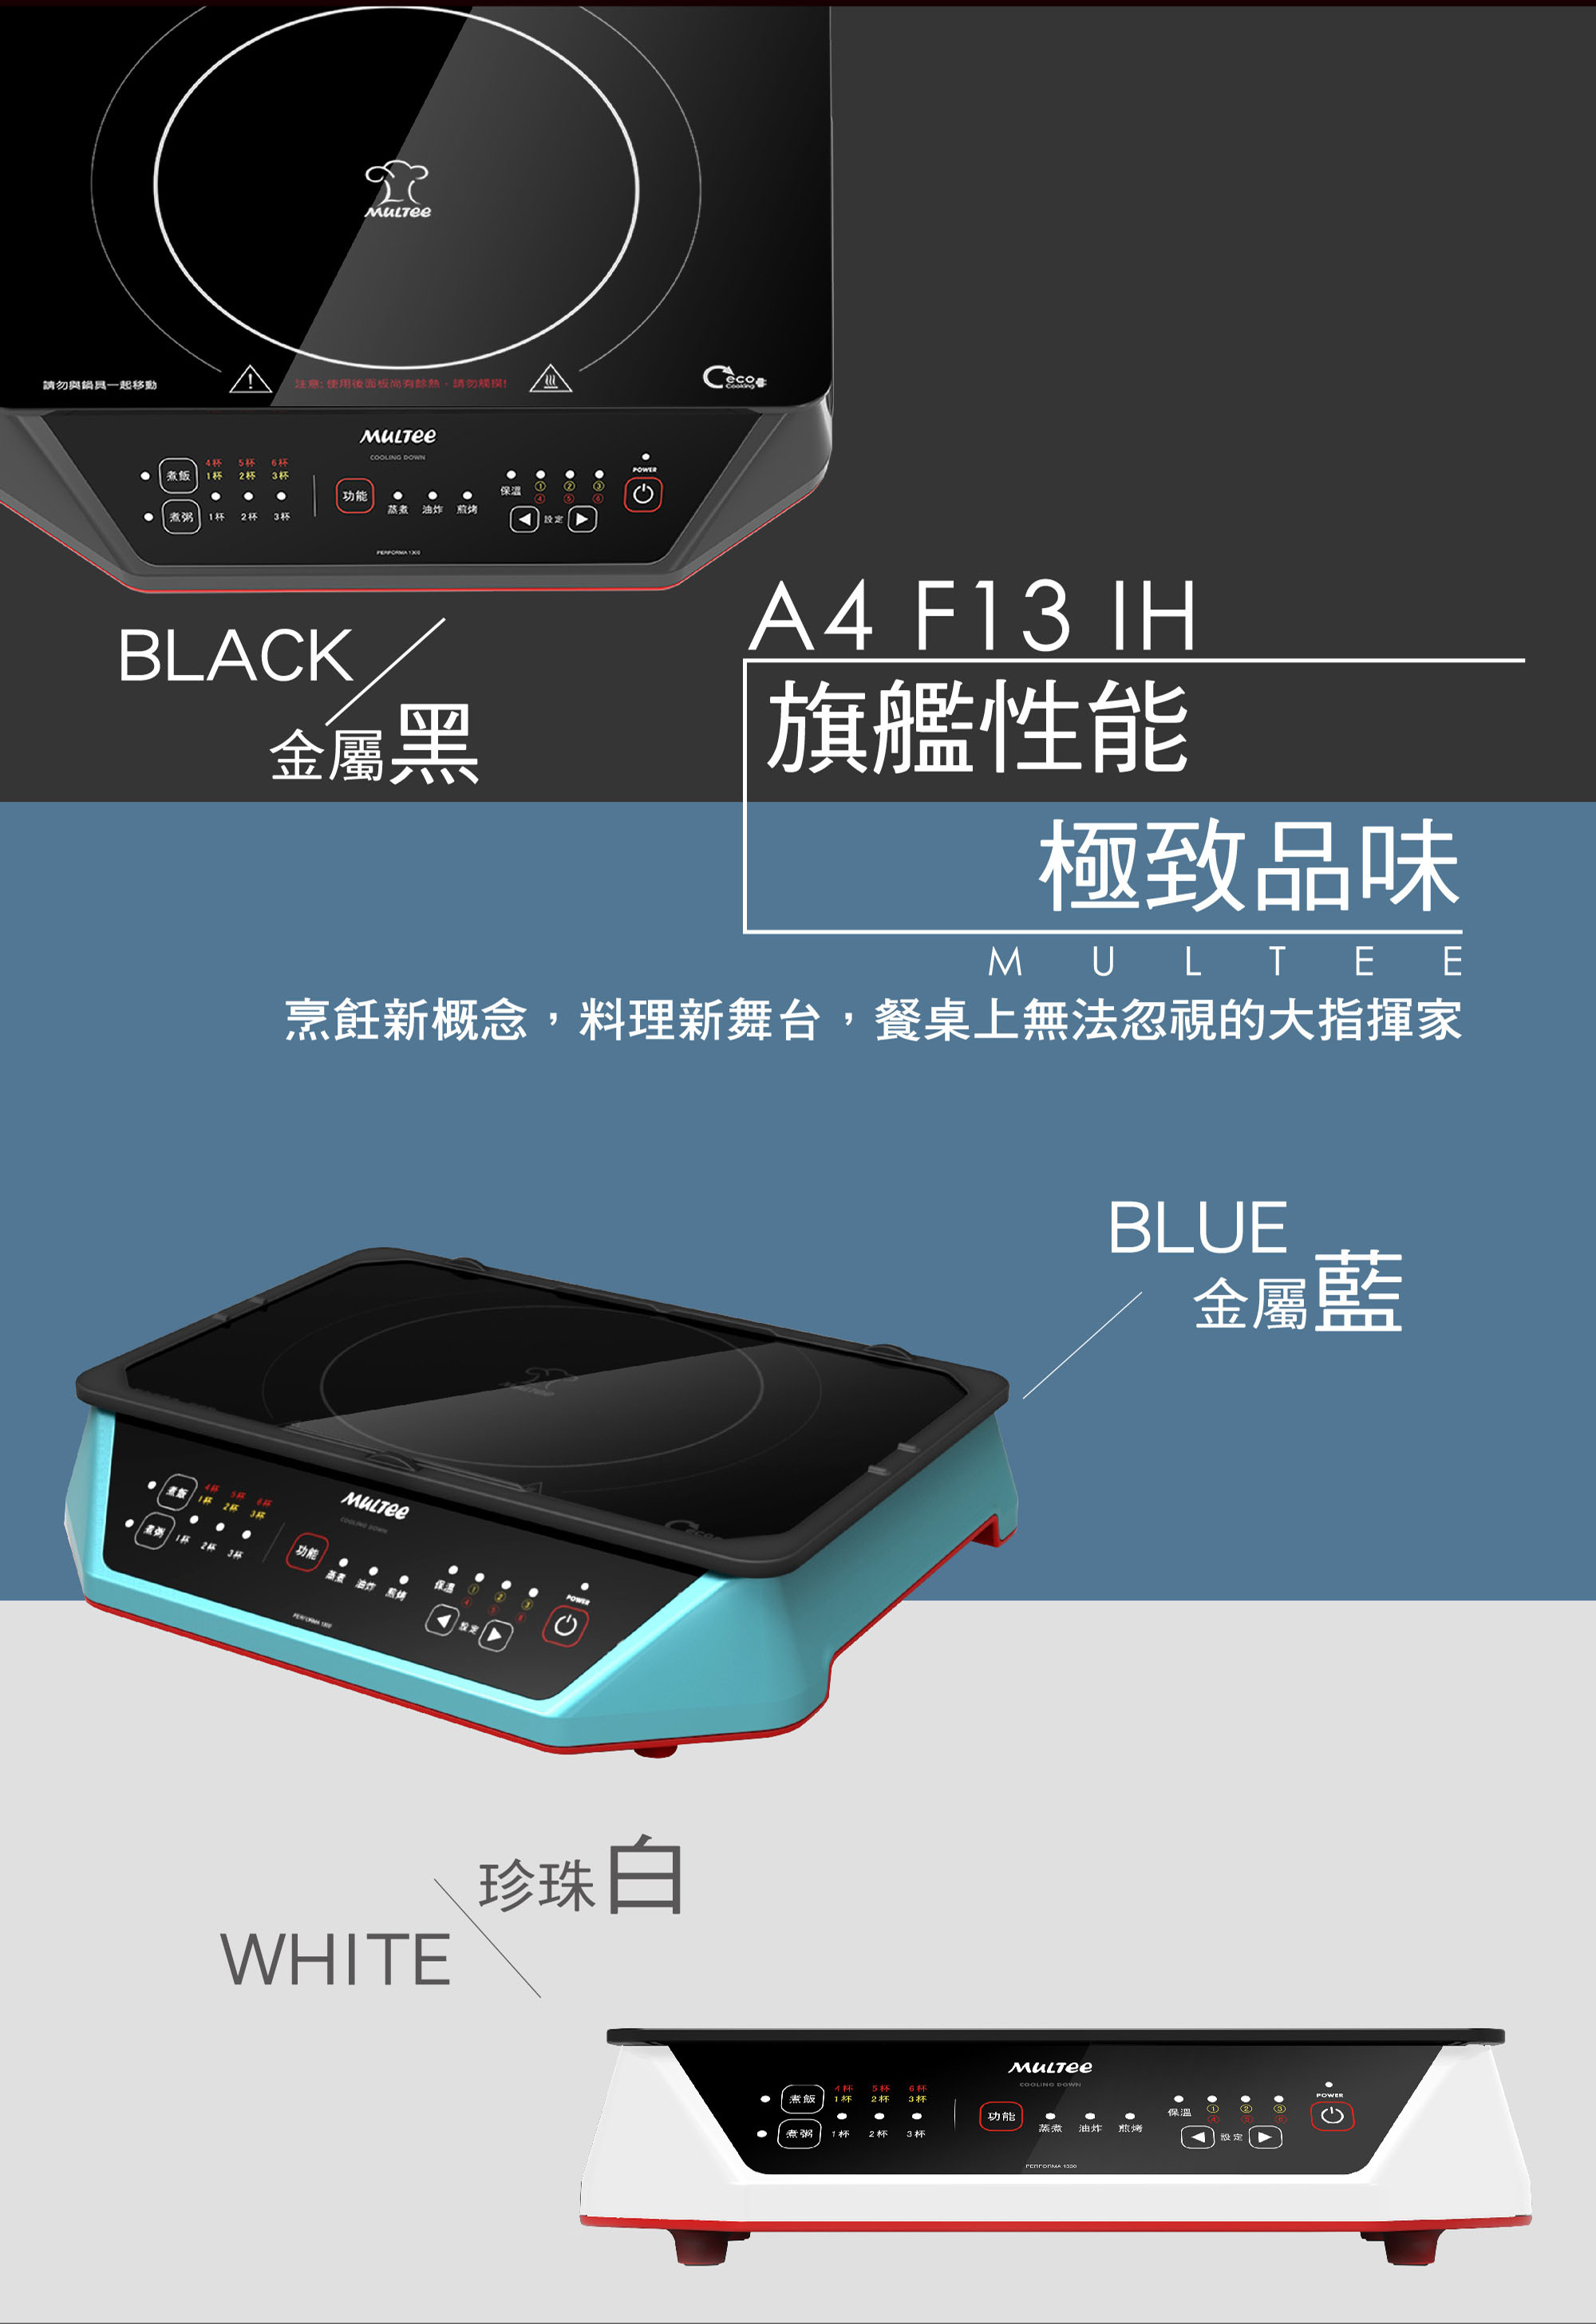 摩堤旗艦IH智慧電磁爐A4 Performa 1300 IH(A4 F13 IH)產品介紹-鋼琴烤漆金屬黑金屬藍